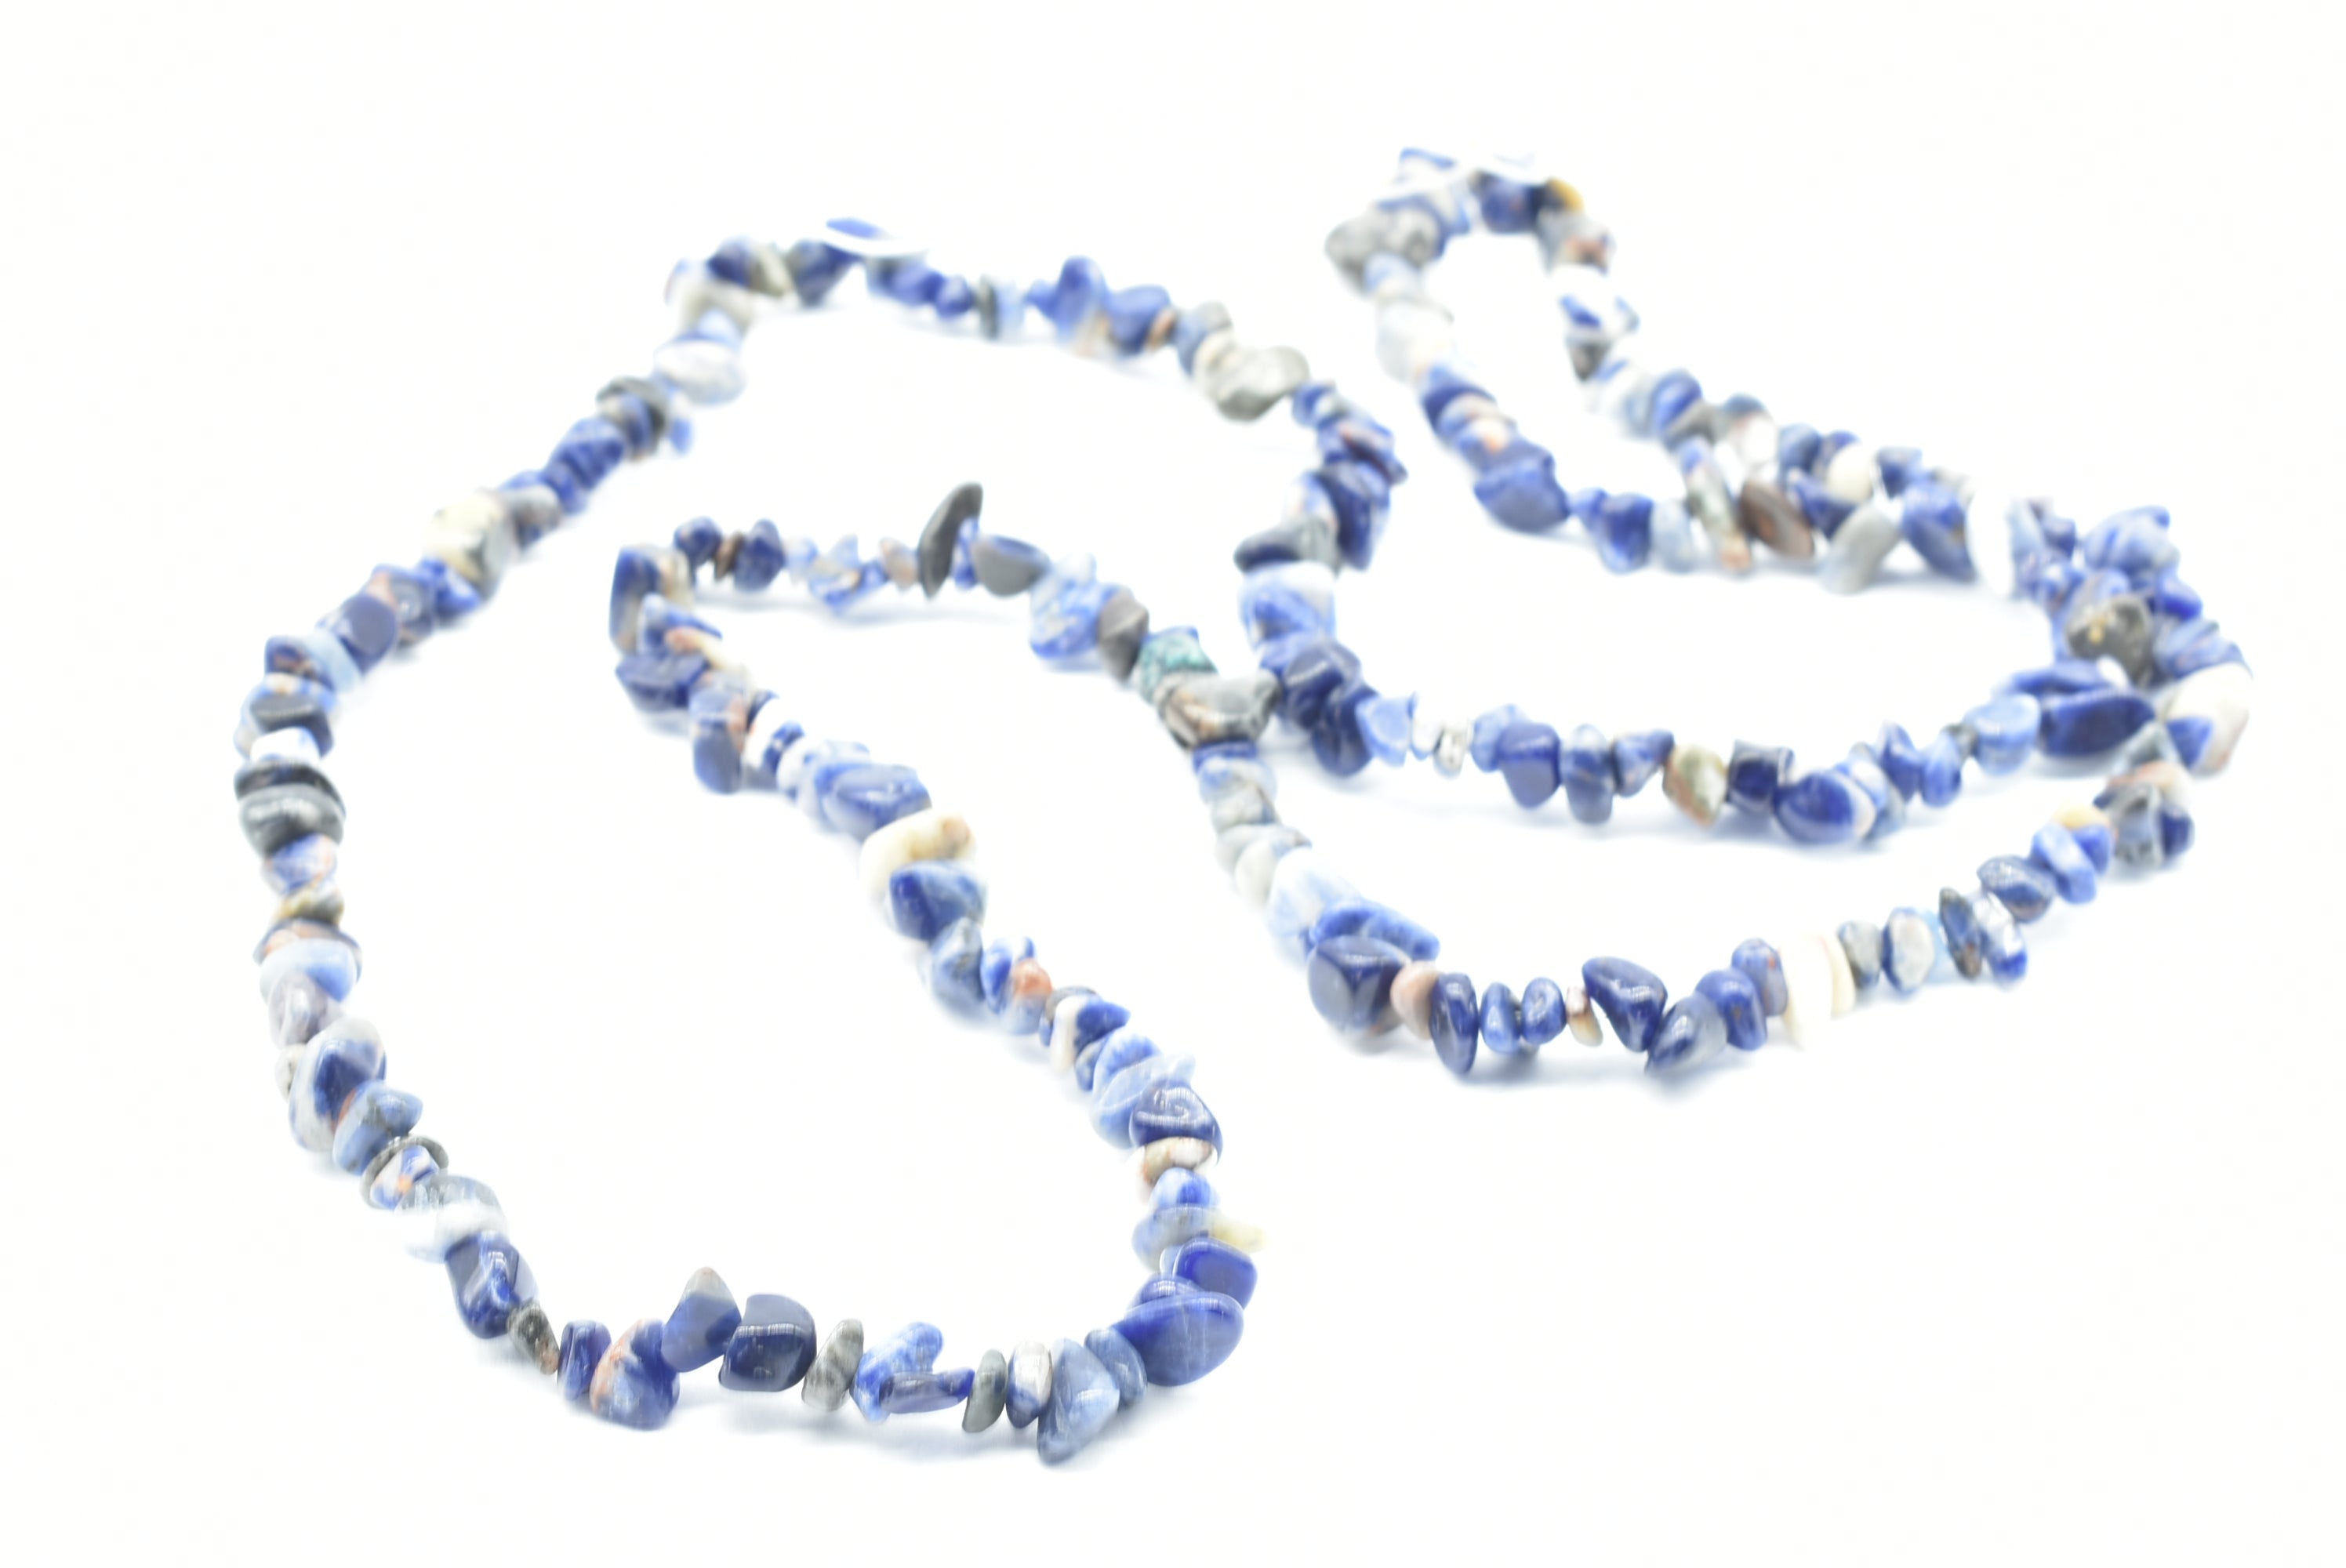 Sodalite stones necklace